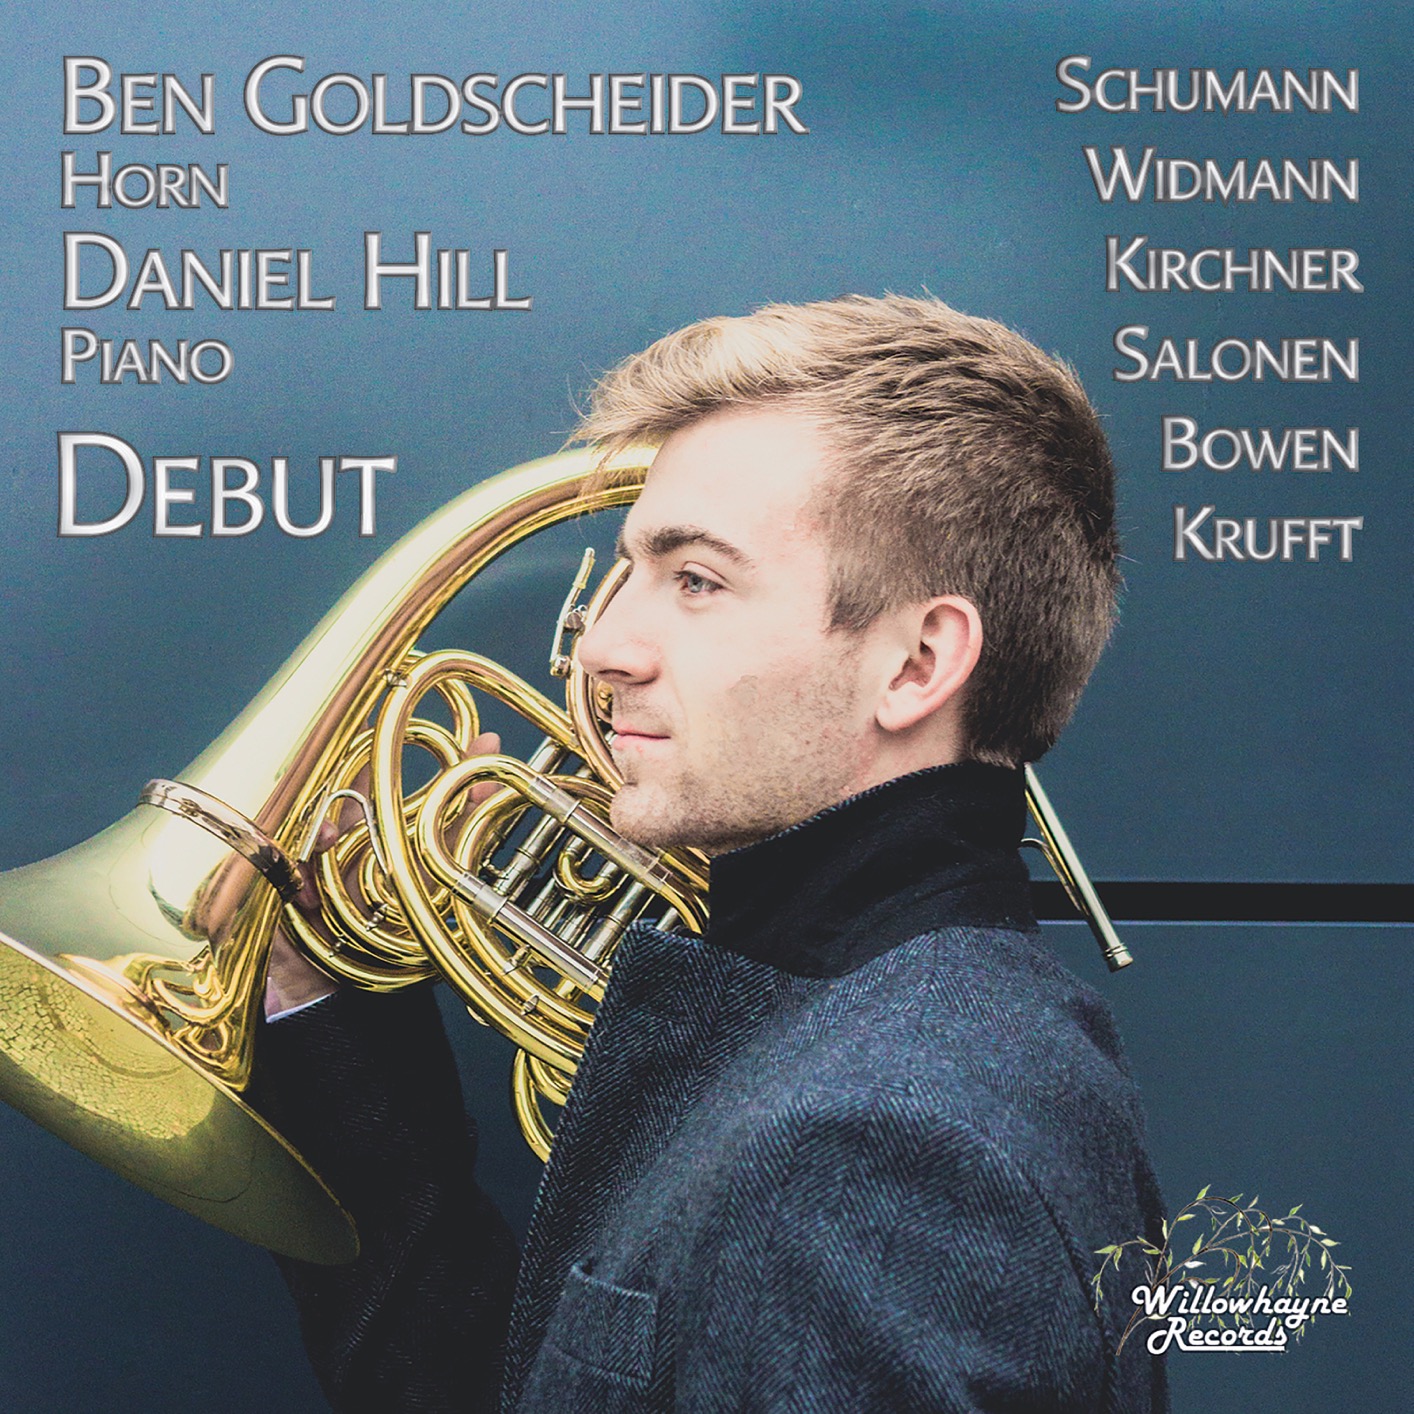 Ben Goldscheider & Daniel Hill – Debut (2018) [FLAC 24bit/192kHz]